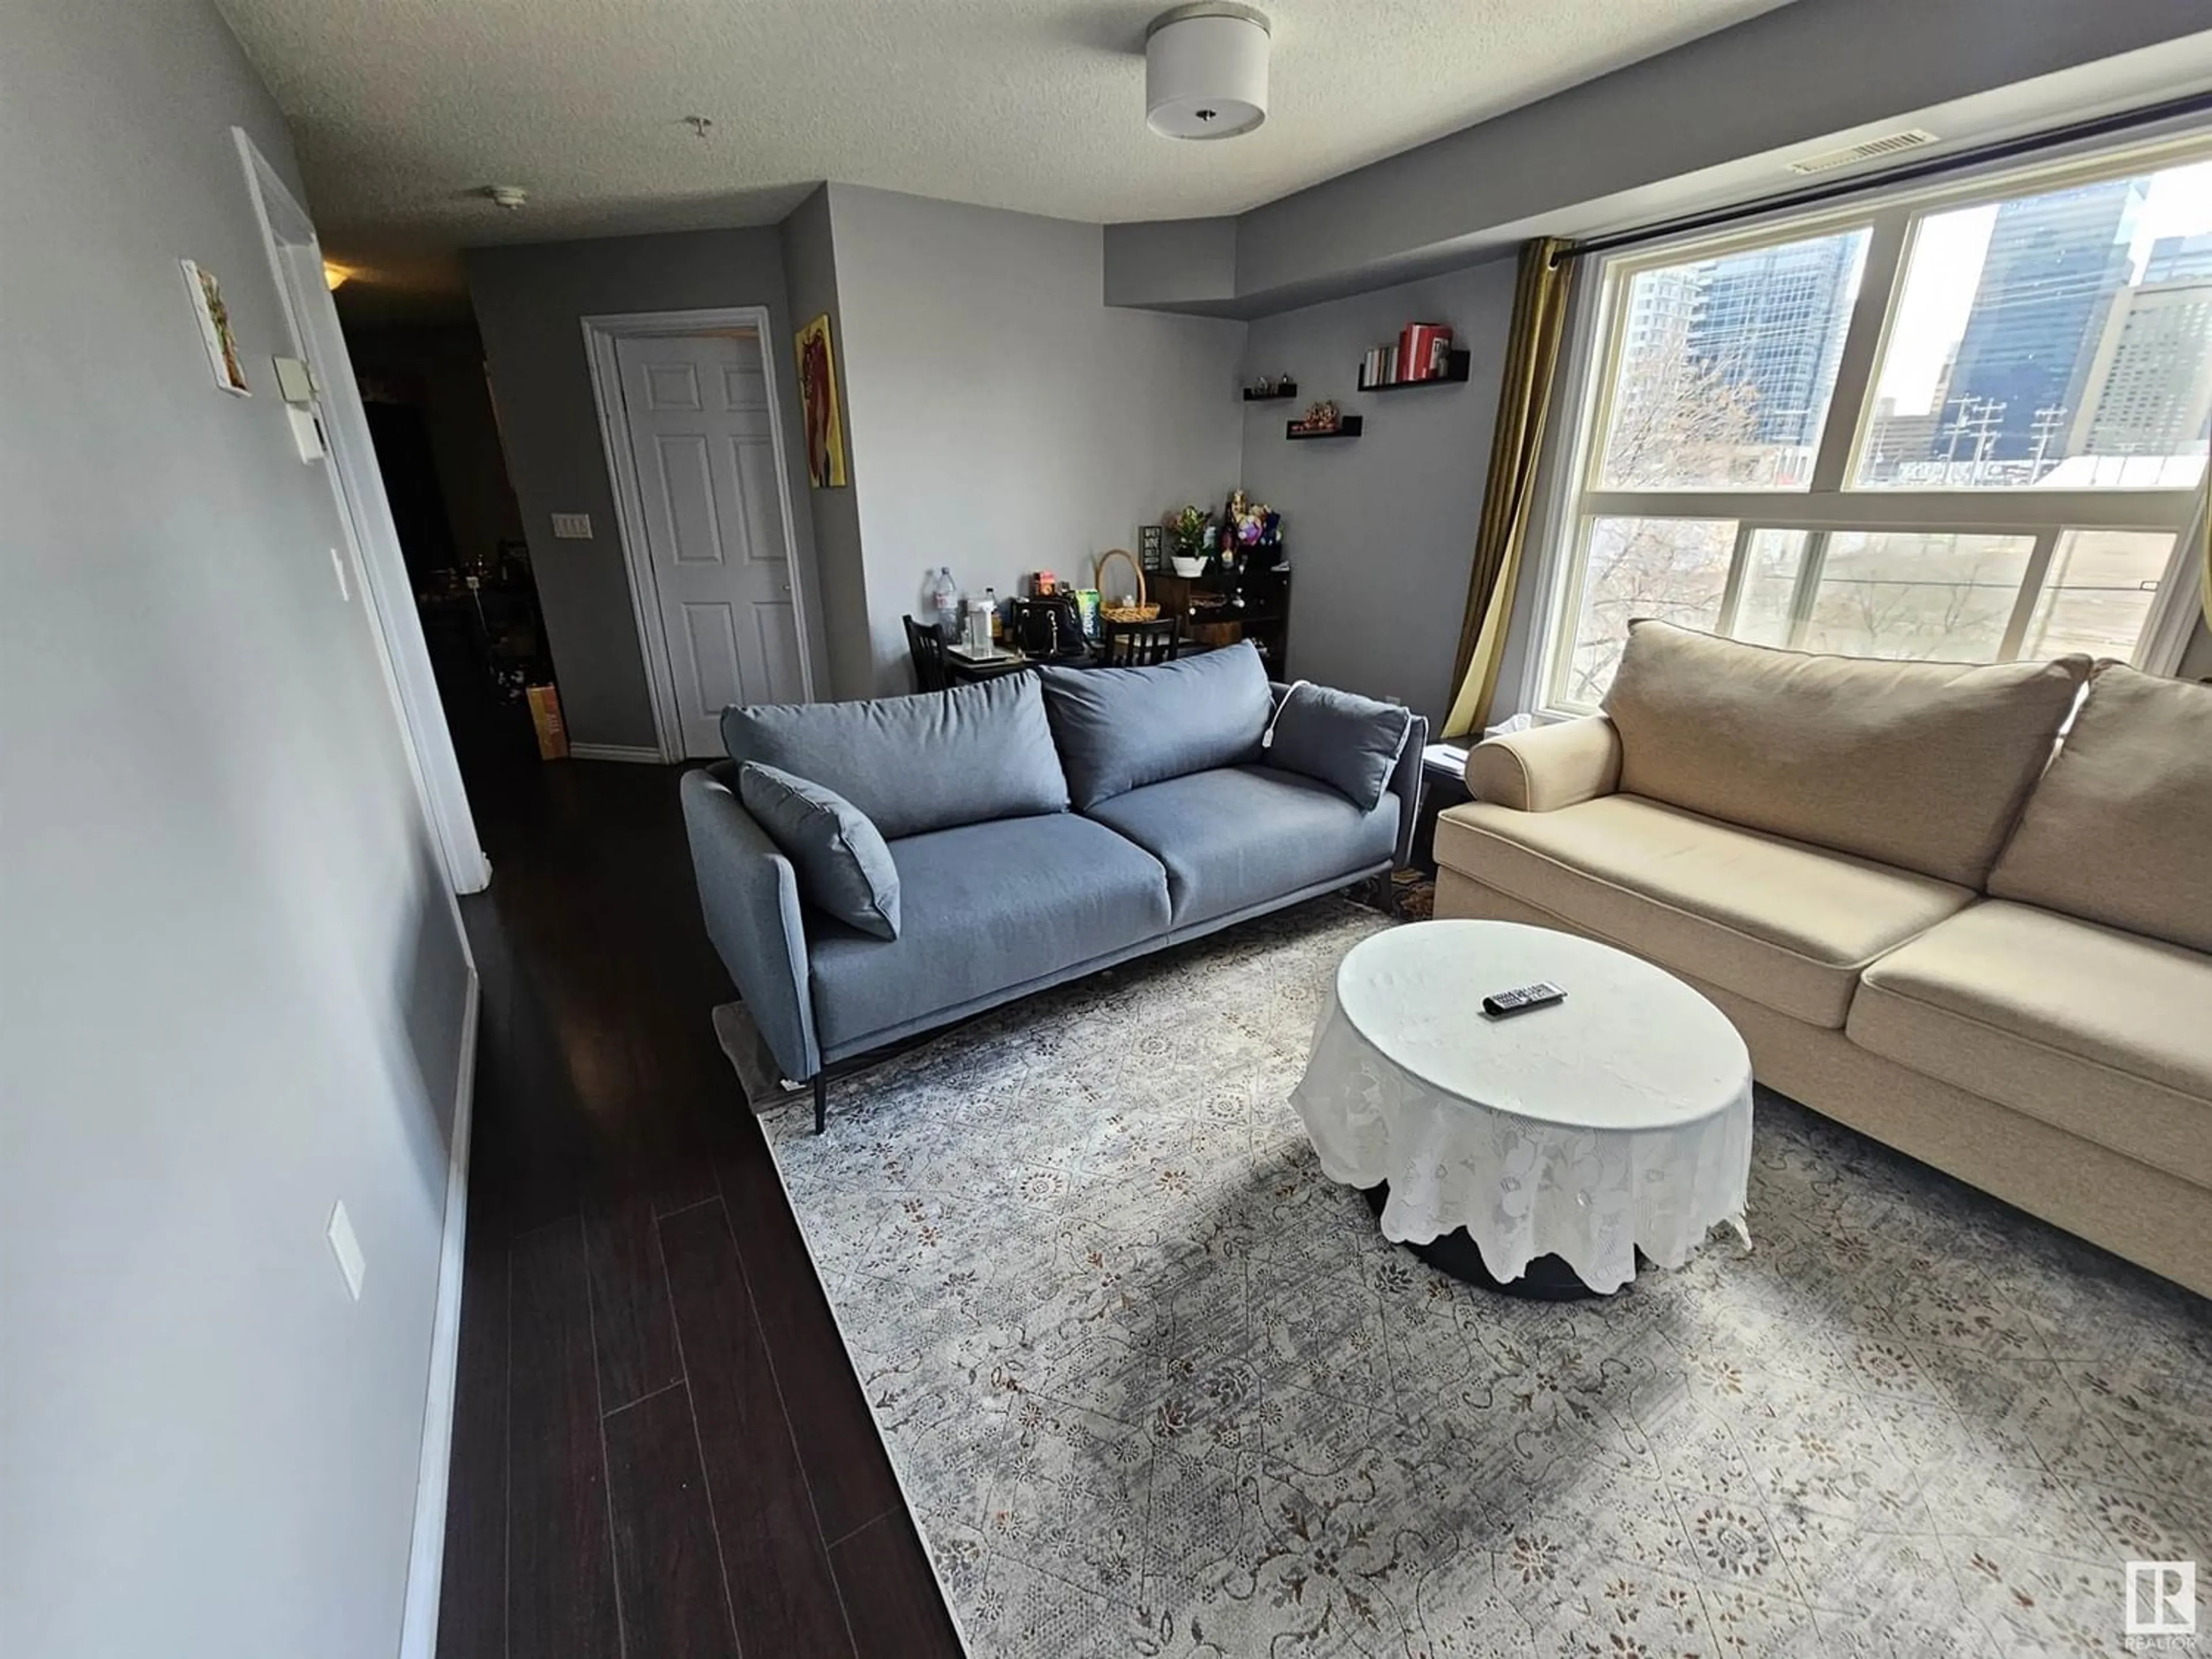 Living room for #301 10118 106 AV NW, Edmonton Alberta T5H0B8